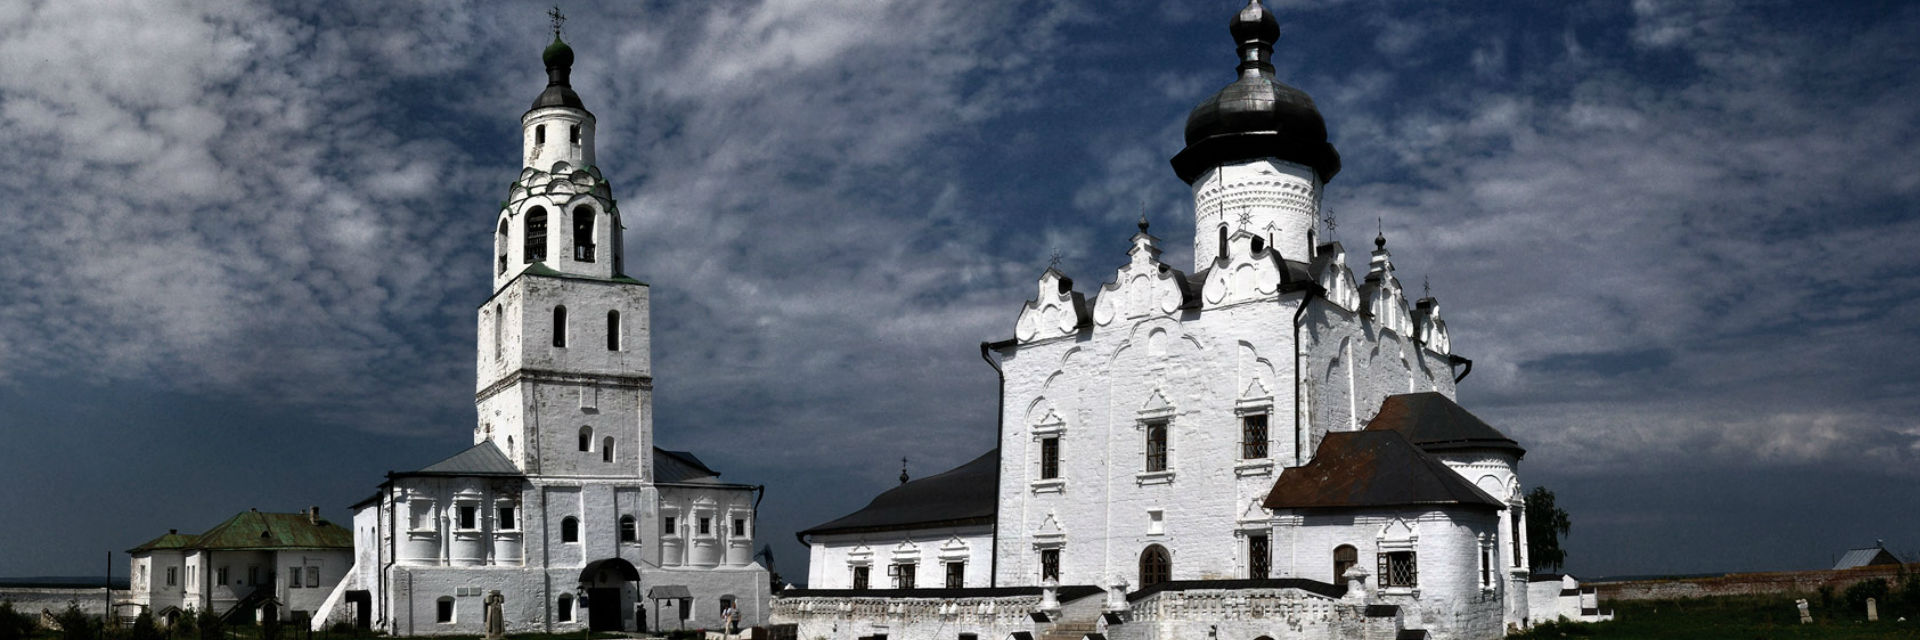 Успенский собор острова-града Свияжск вошел в список Всемирного наследия ЮНЕСКО